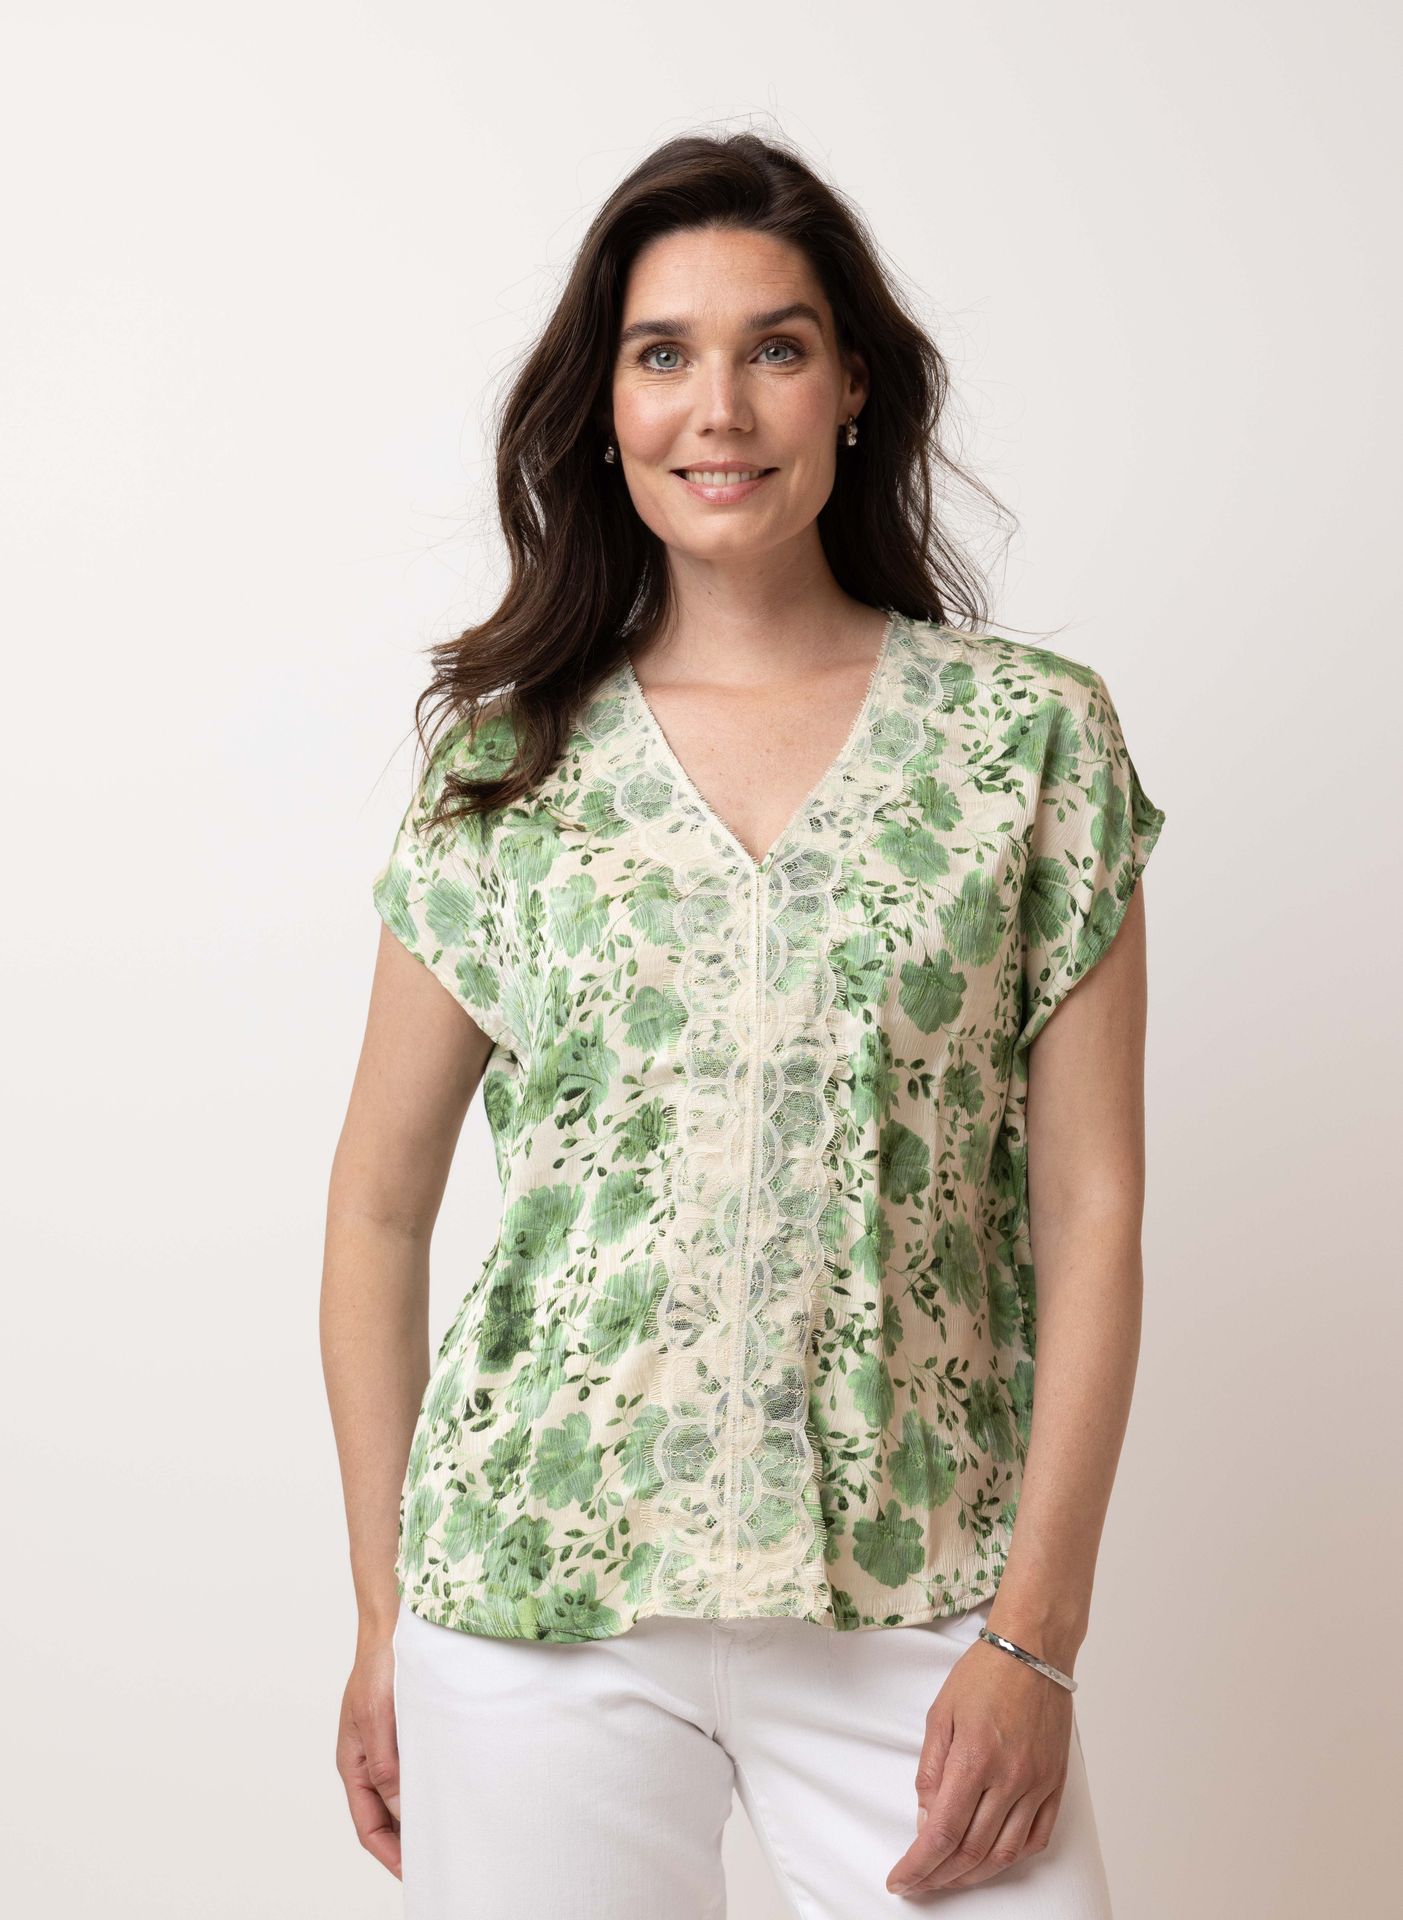 Norah Groene blouse green/ecru 214313-541